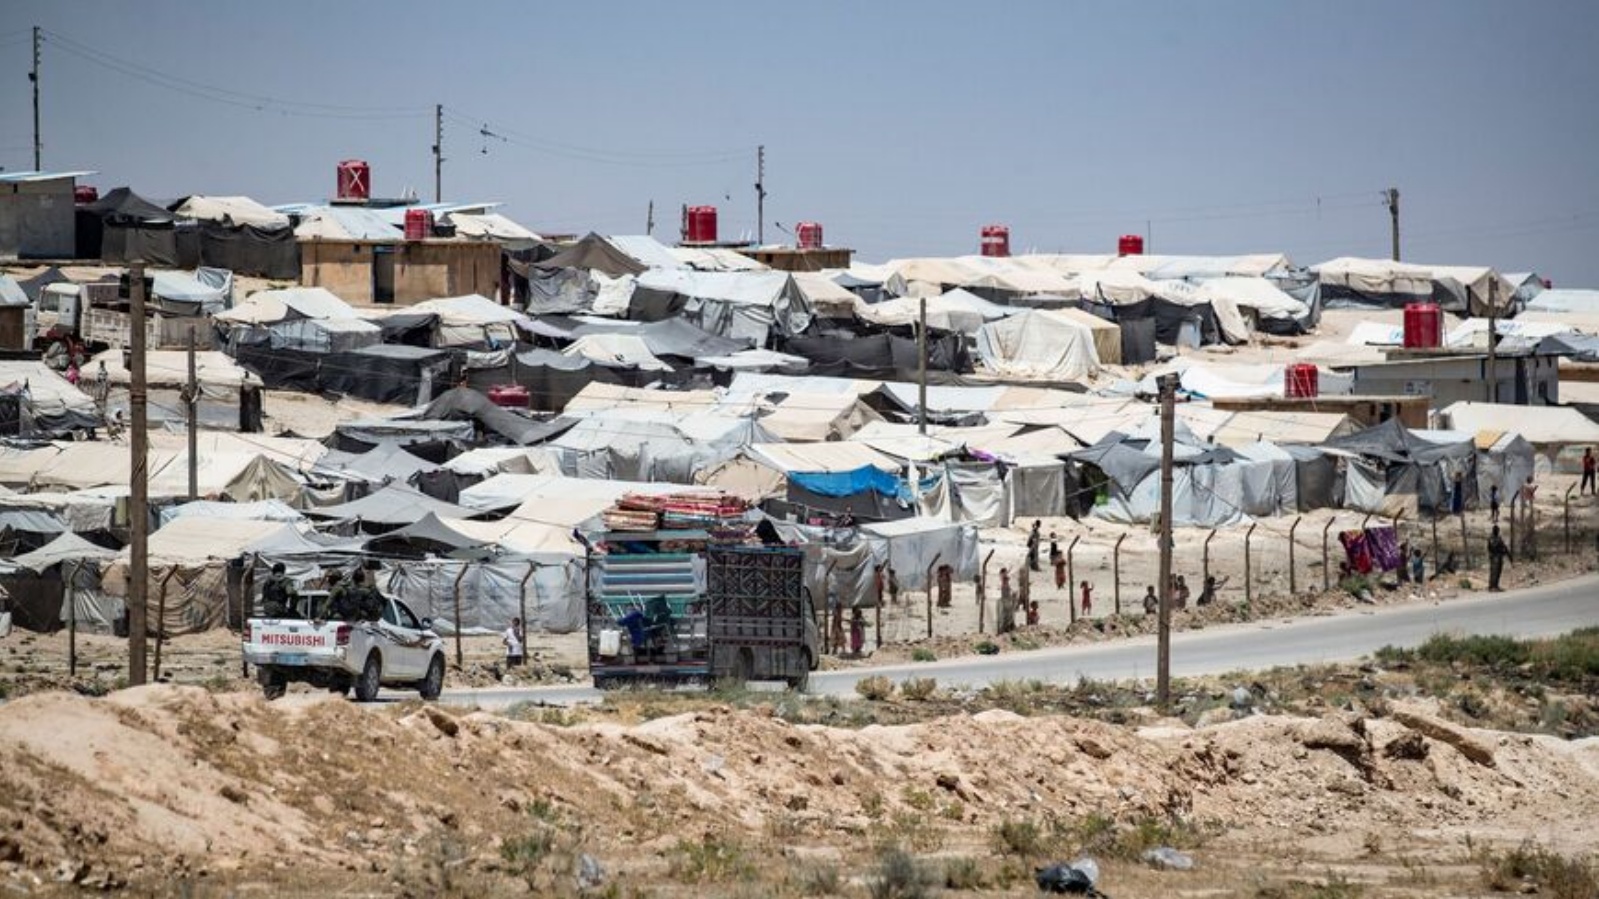 منظر عام يُظهر مخيم الهول الذي يديره الأكراد ويحتجز أقارب مقاتلين يشتبه في كونهم من تنظيم الدولة الإسلامية، في شمال شرق محافظة الحسكة السورية، في 2 يونيو 2021